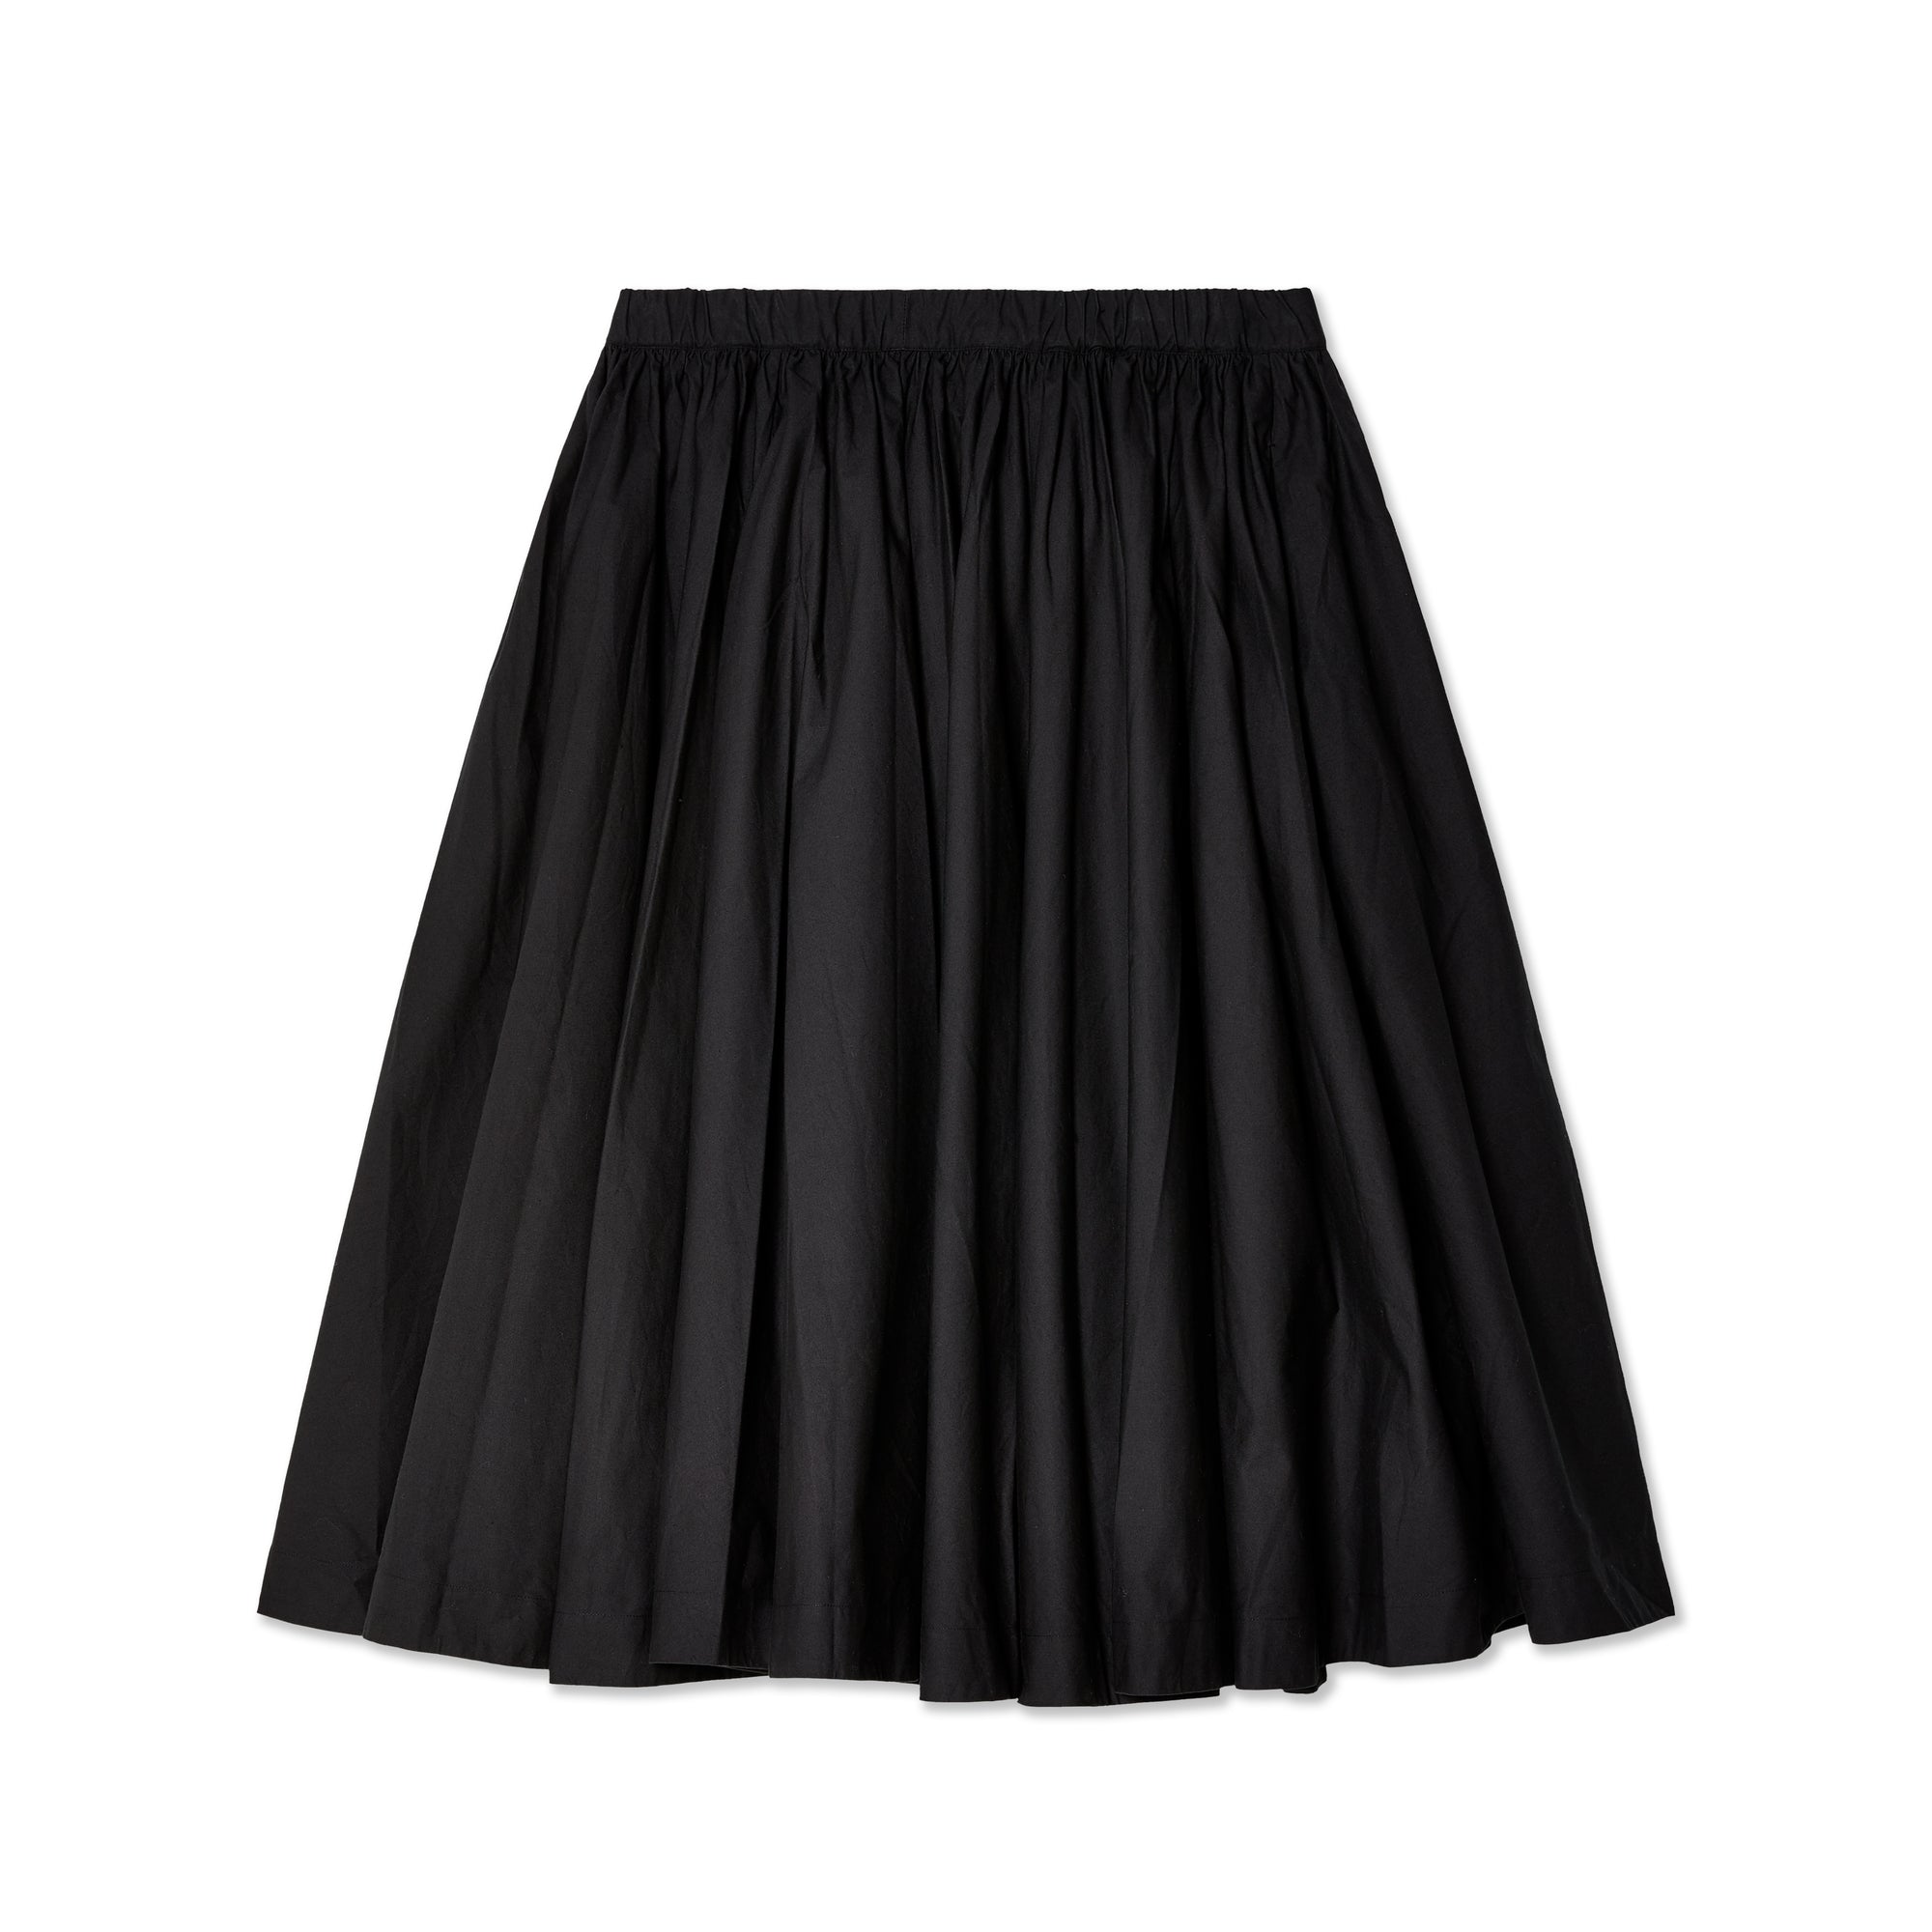 Egg Trading - Women's Holly Skirt - (Black) view 2